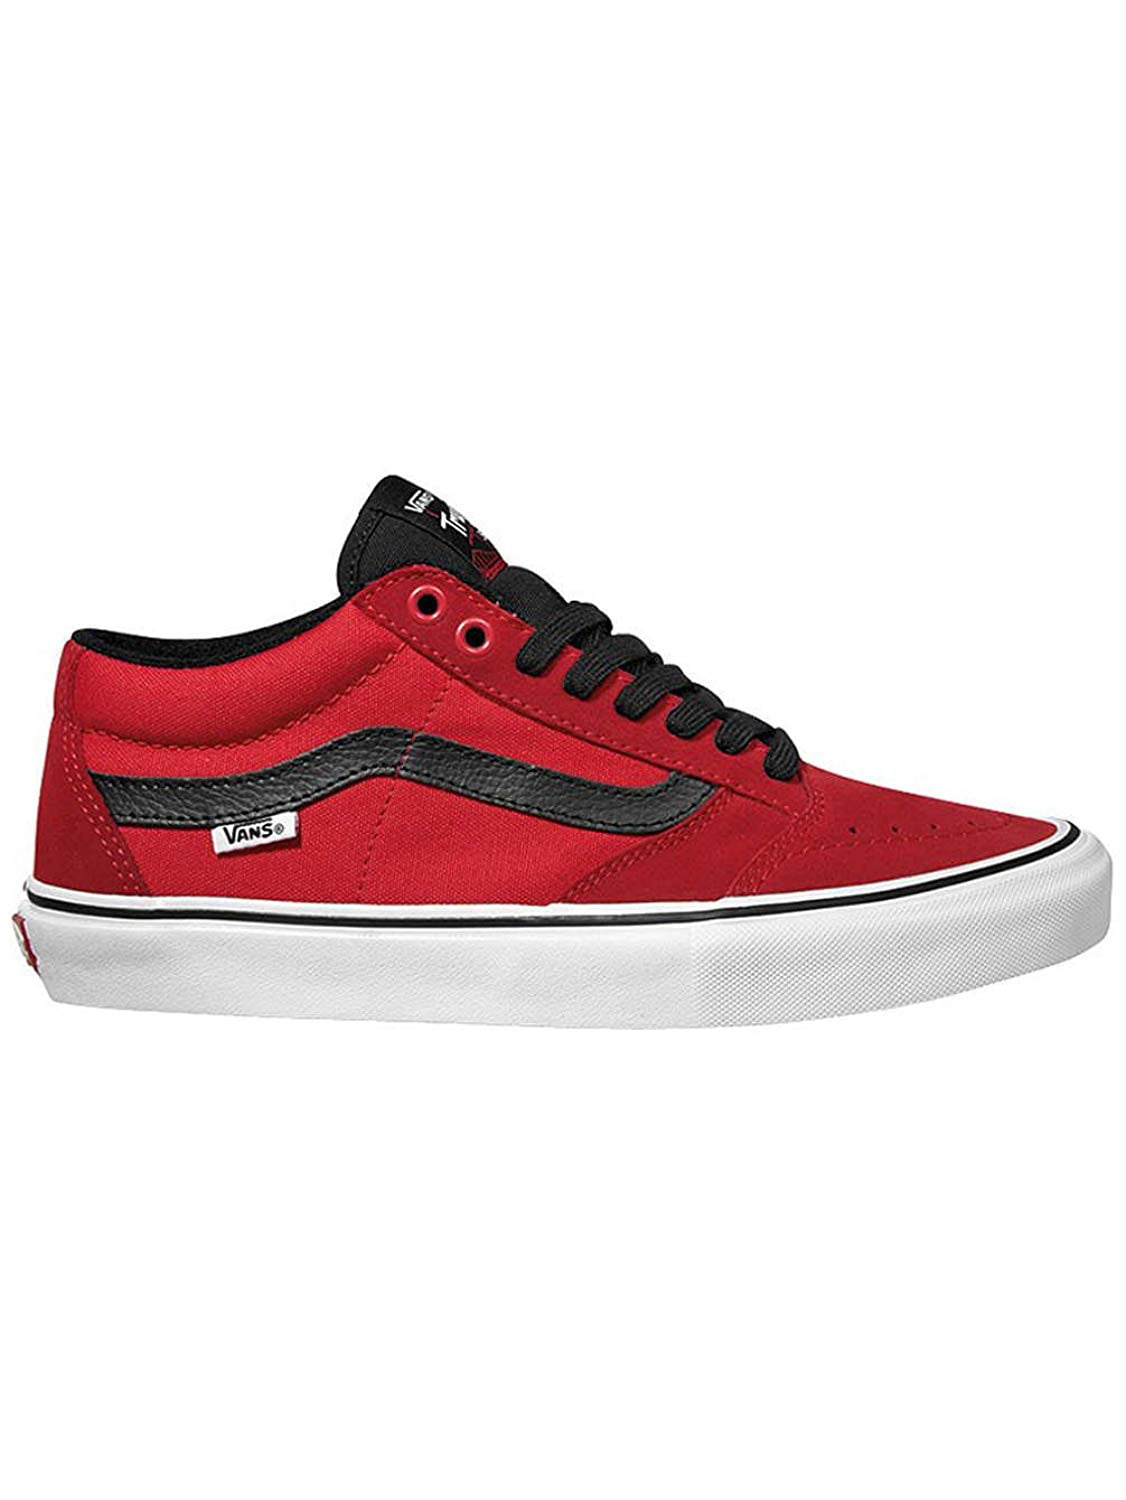 Uitverkoop Uitgebreid hebben zich vergist Vans TNT SG Bright Red/Black/White Men's Classic Skate Shoes Size 7 -  Walmart.com